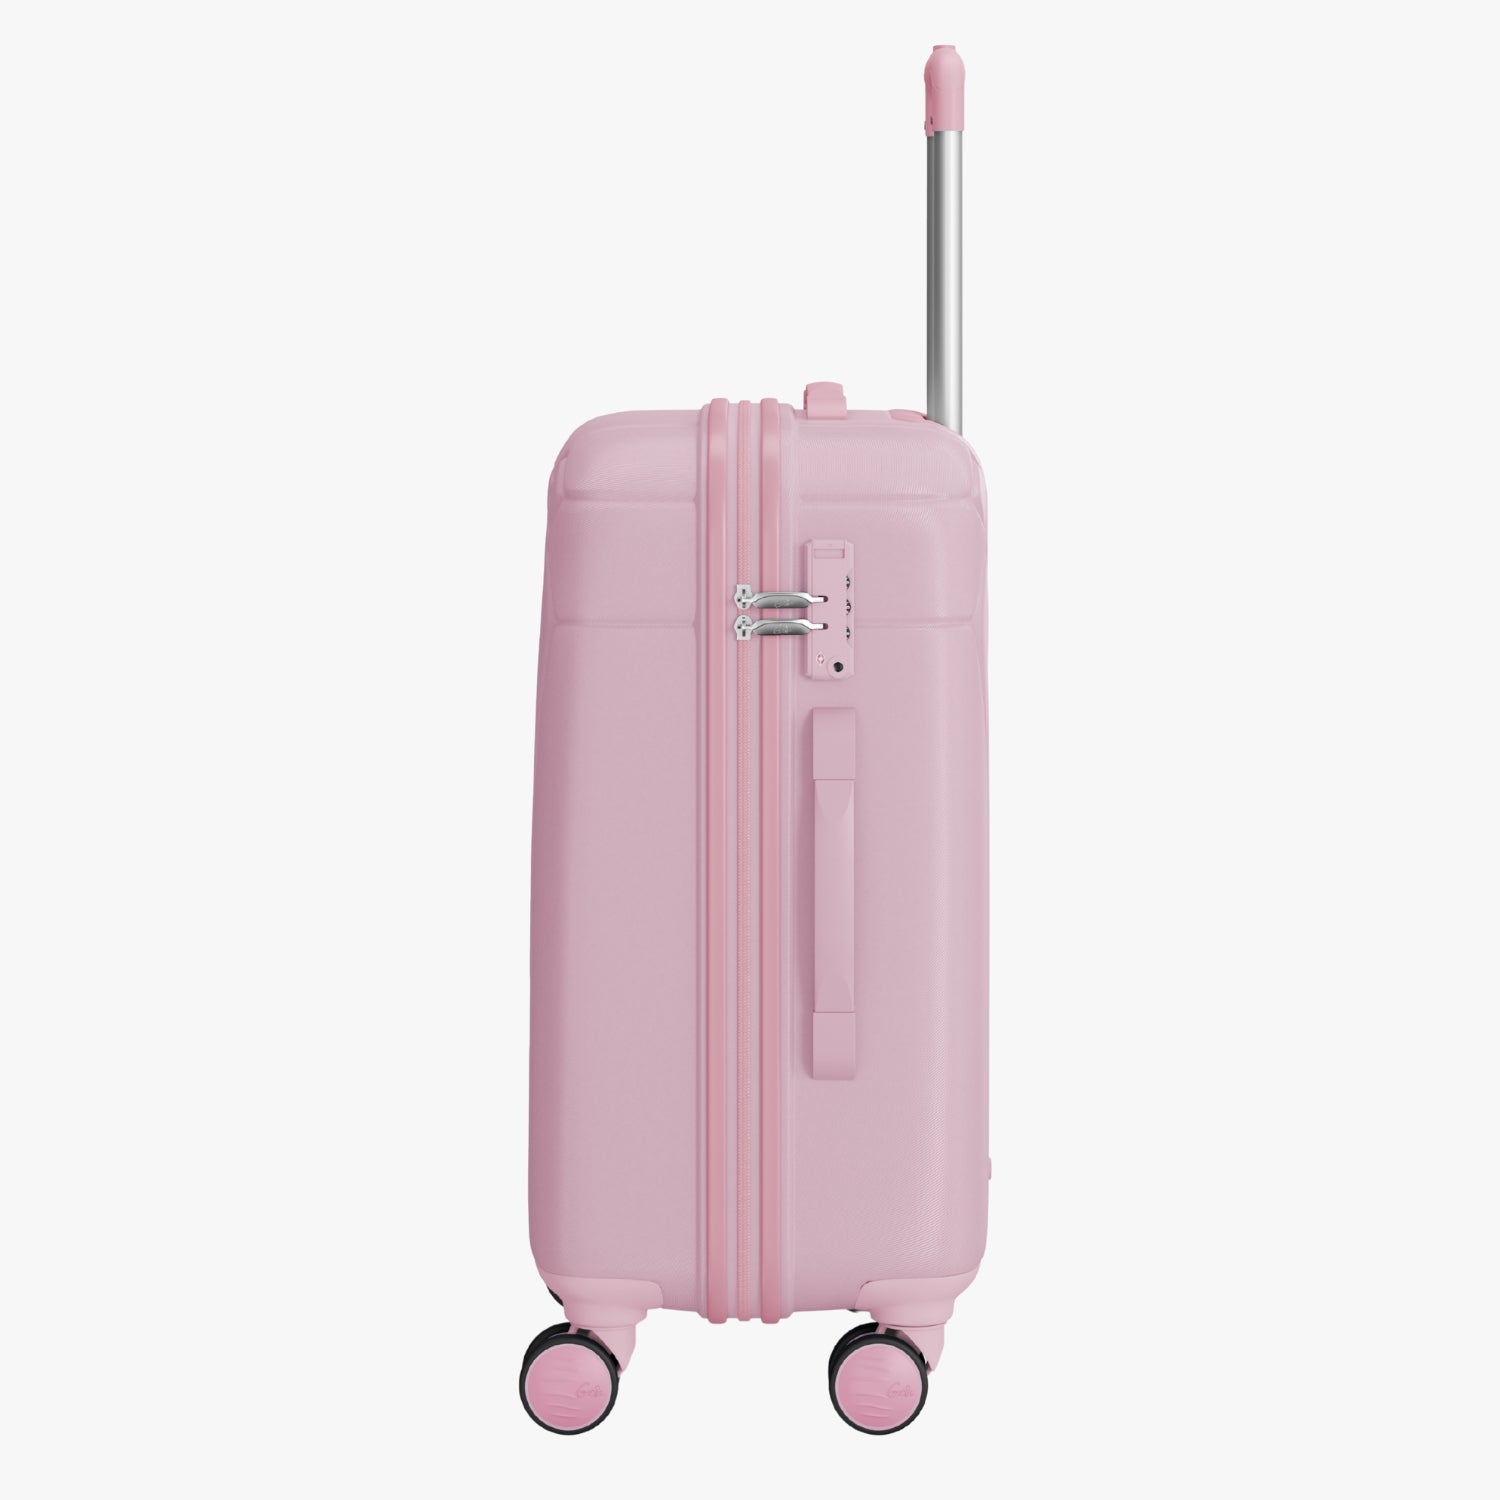 Genie Dew Marshmallow Pink Trolley Bag With Dual Wheels & TSA Lock